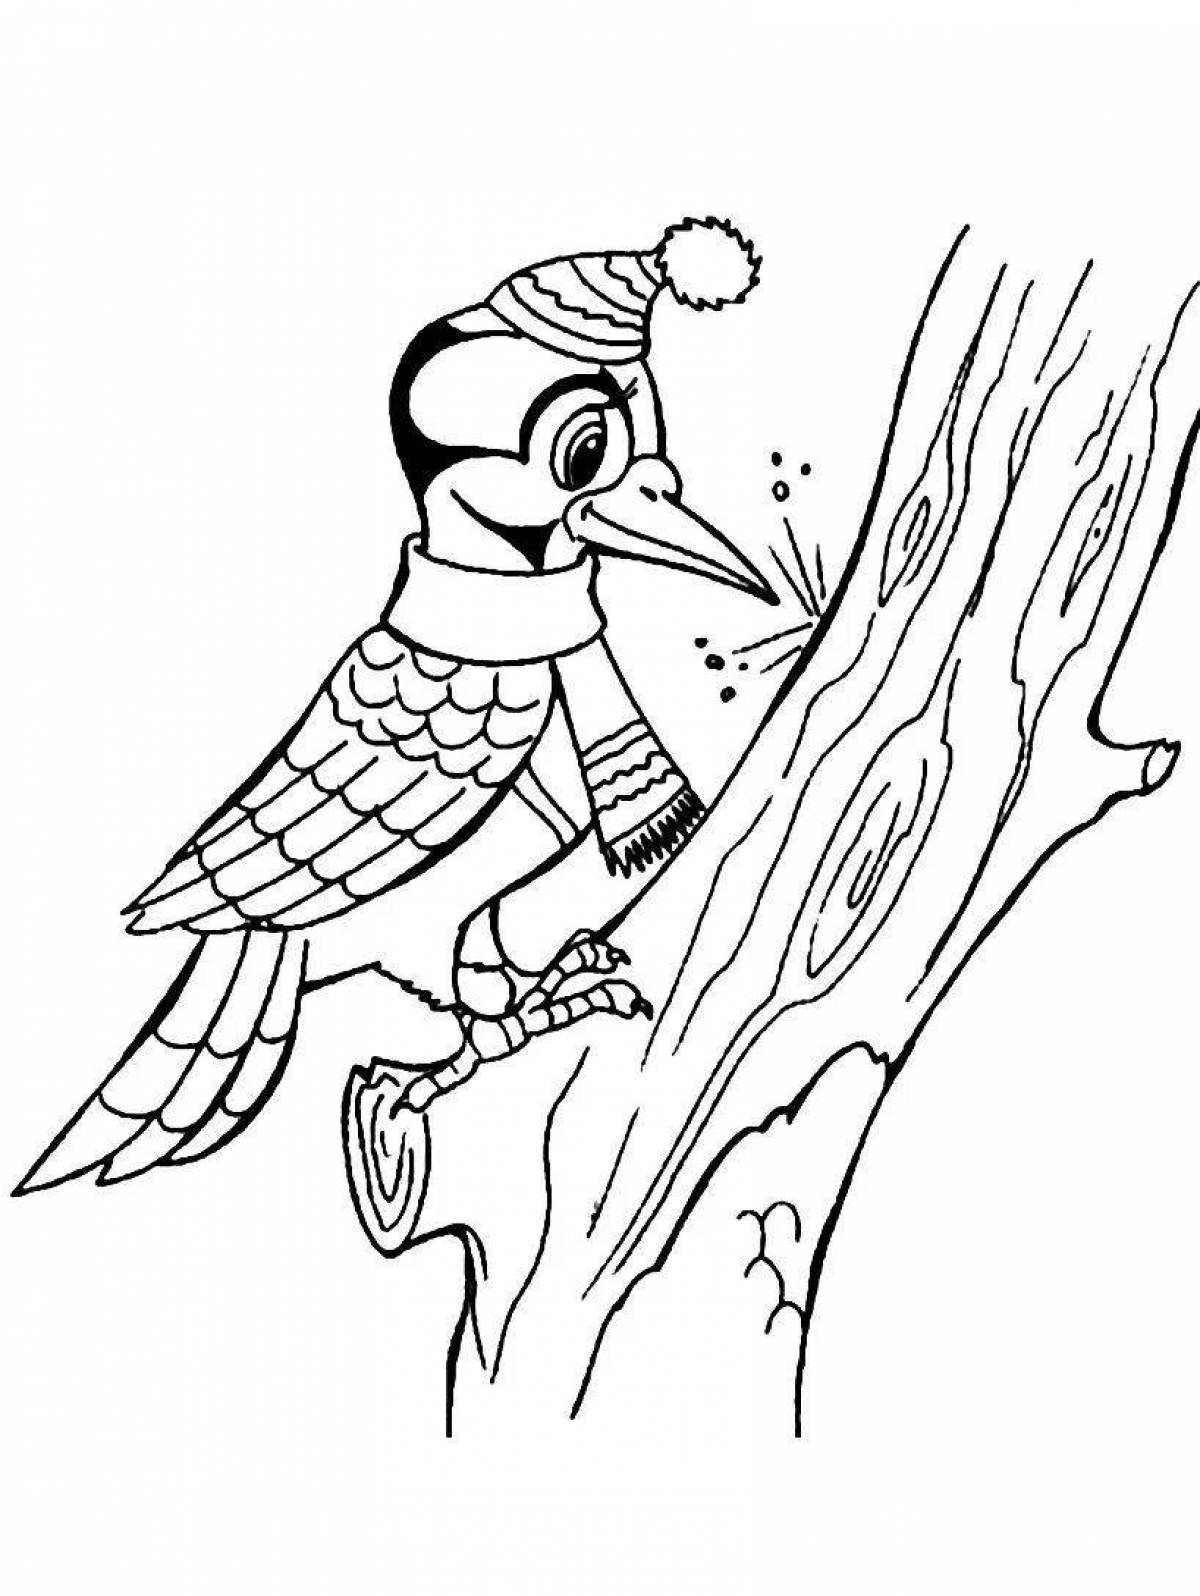 Majestic woodpecker on a tree